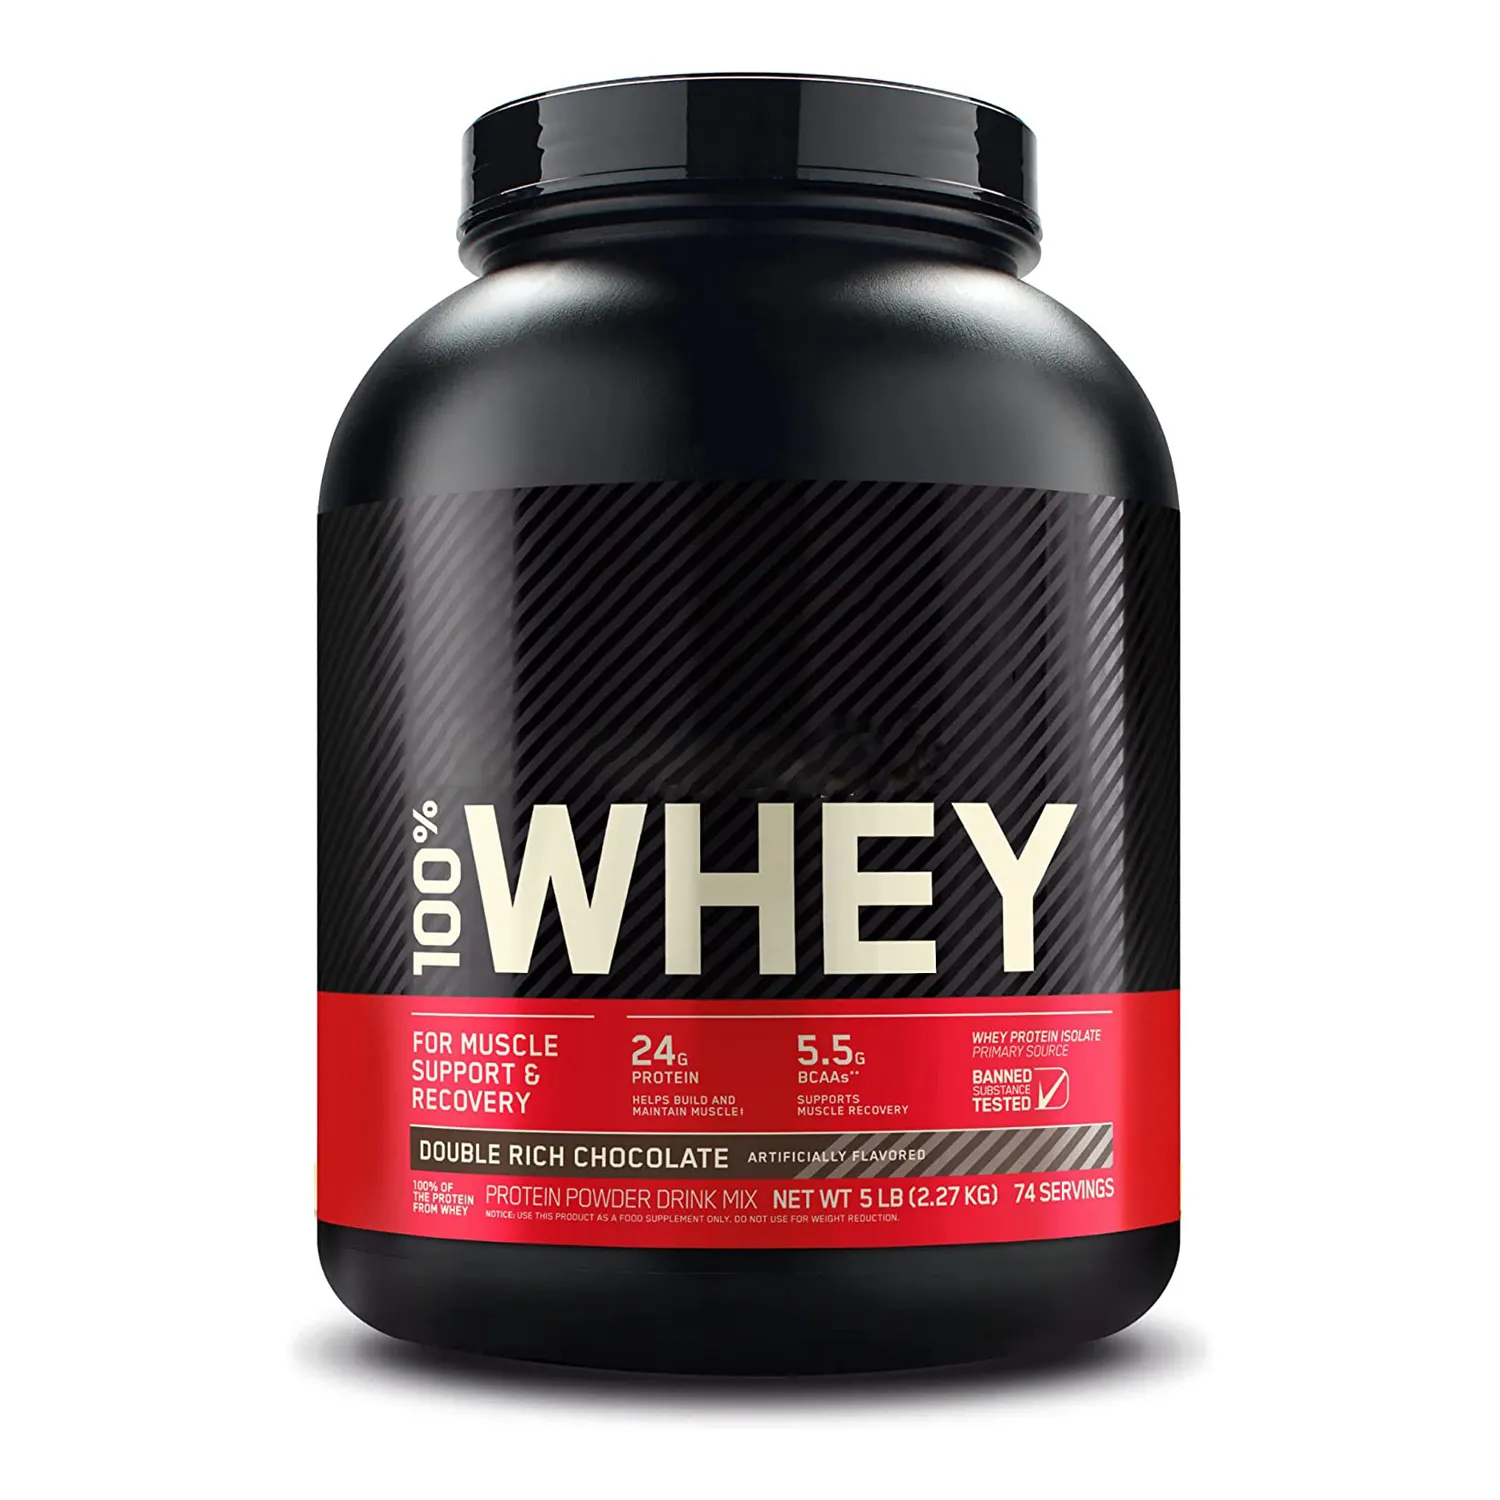 Bán buôn cỏ Fed ISO kg thể thao chăm sóc sức khỏe bổ sung proteinas deportivos rõ ràng dinh dưỡng tiêu chuẩn vàng Whey Protein